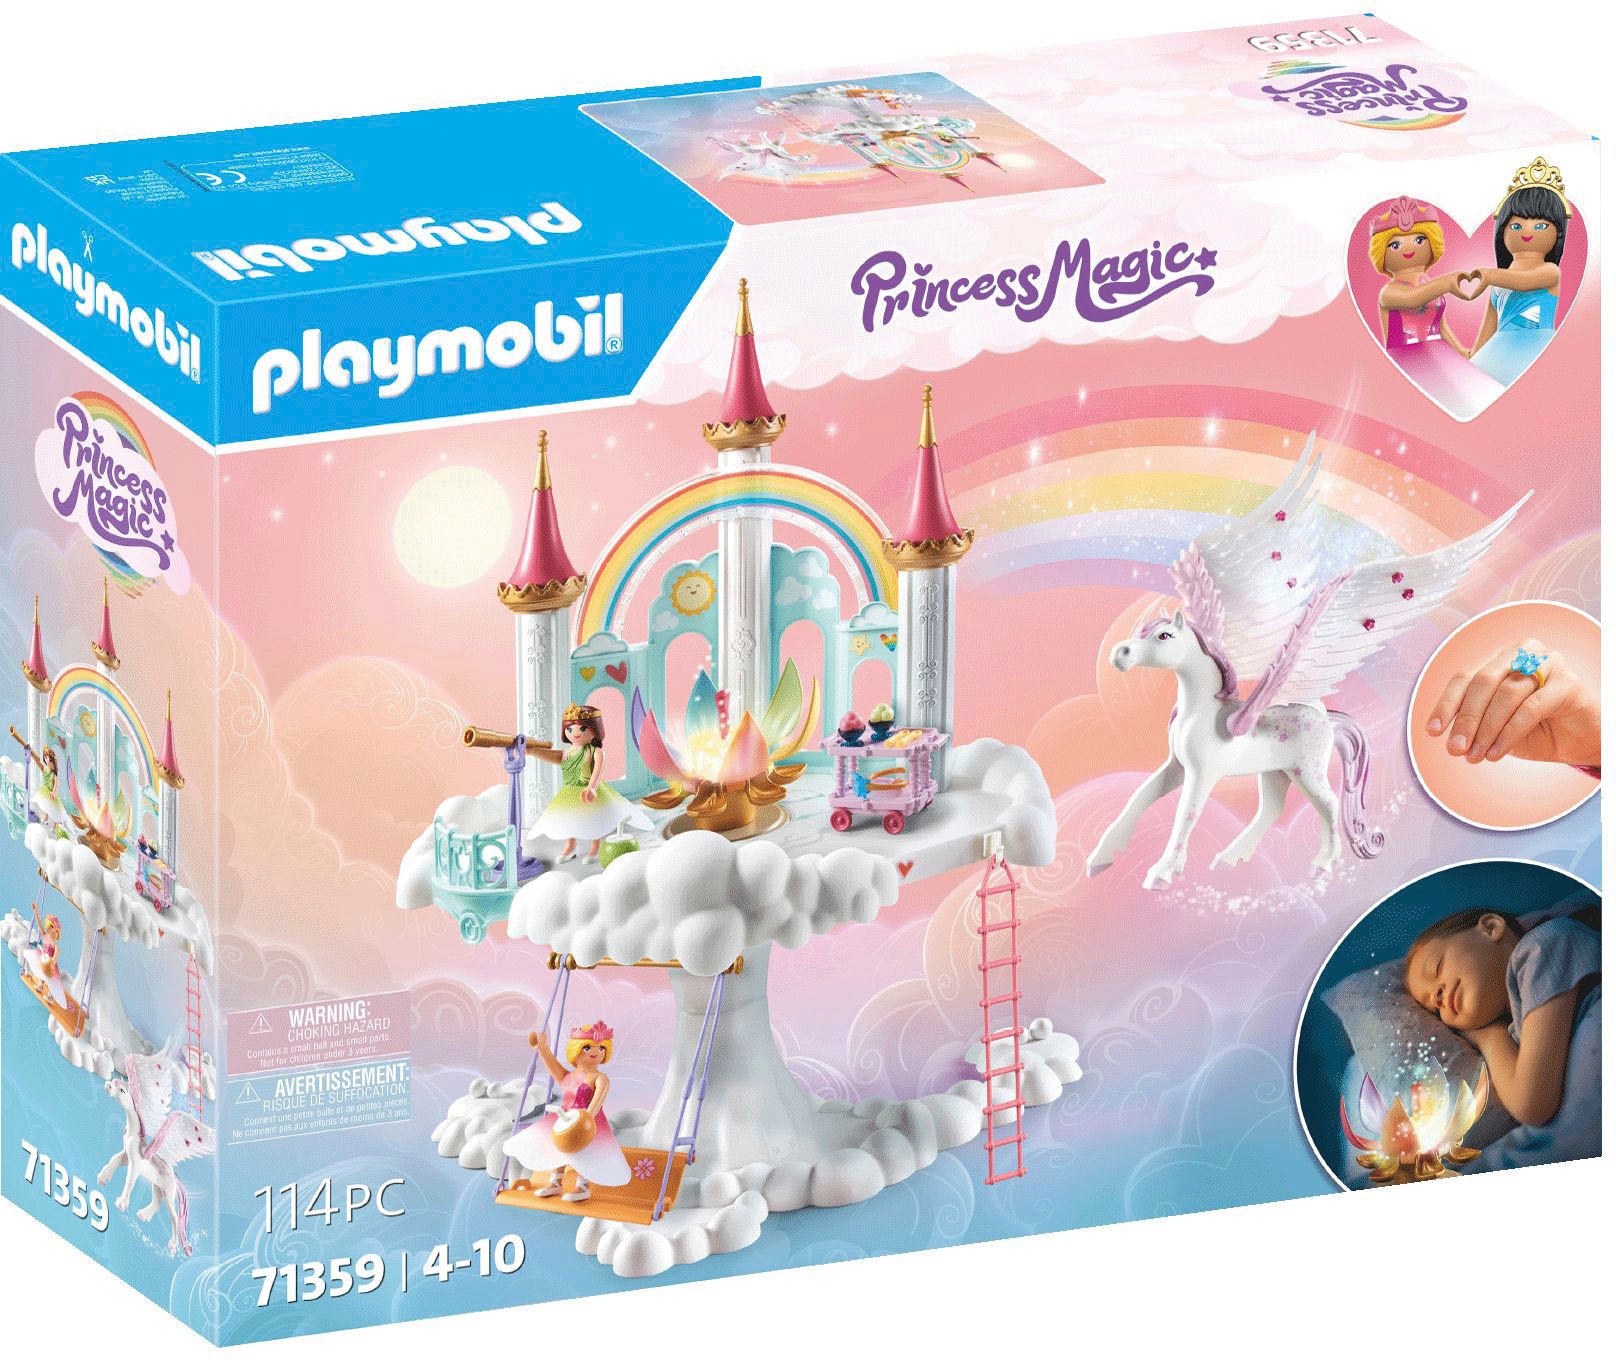 Playmobil Princess Magic